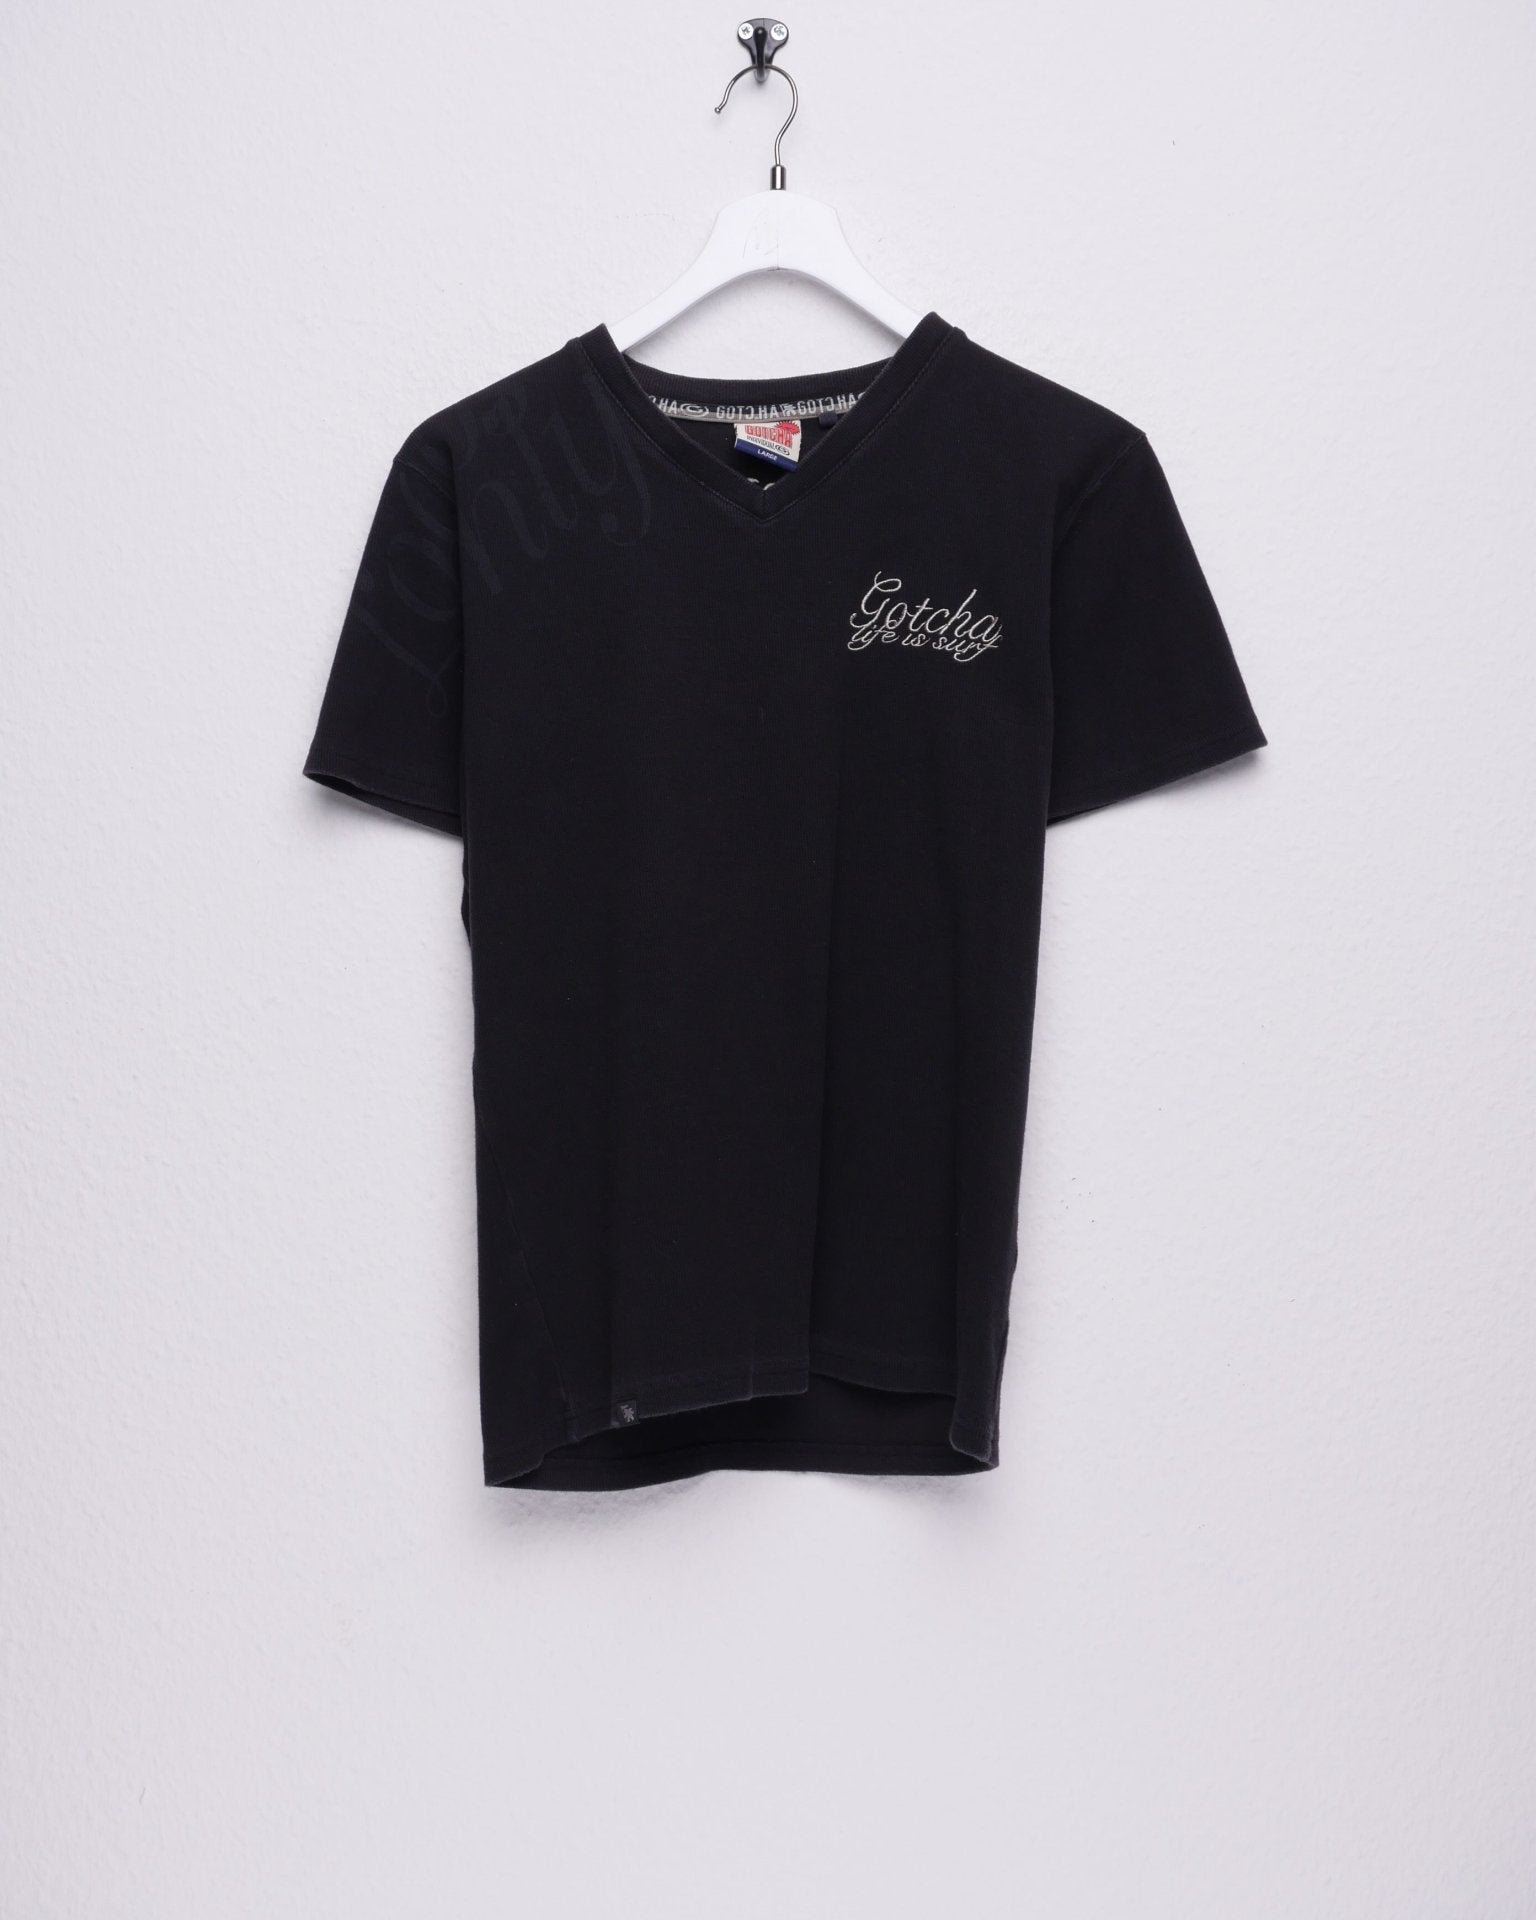 Gotcha embroidered black basic Shirt - Peeces